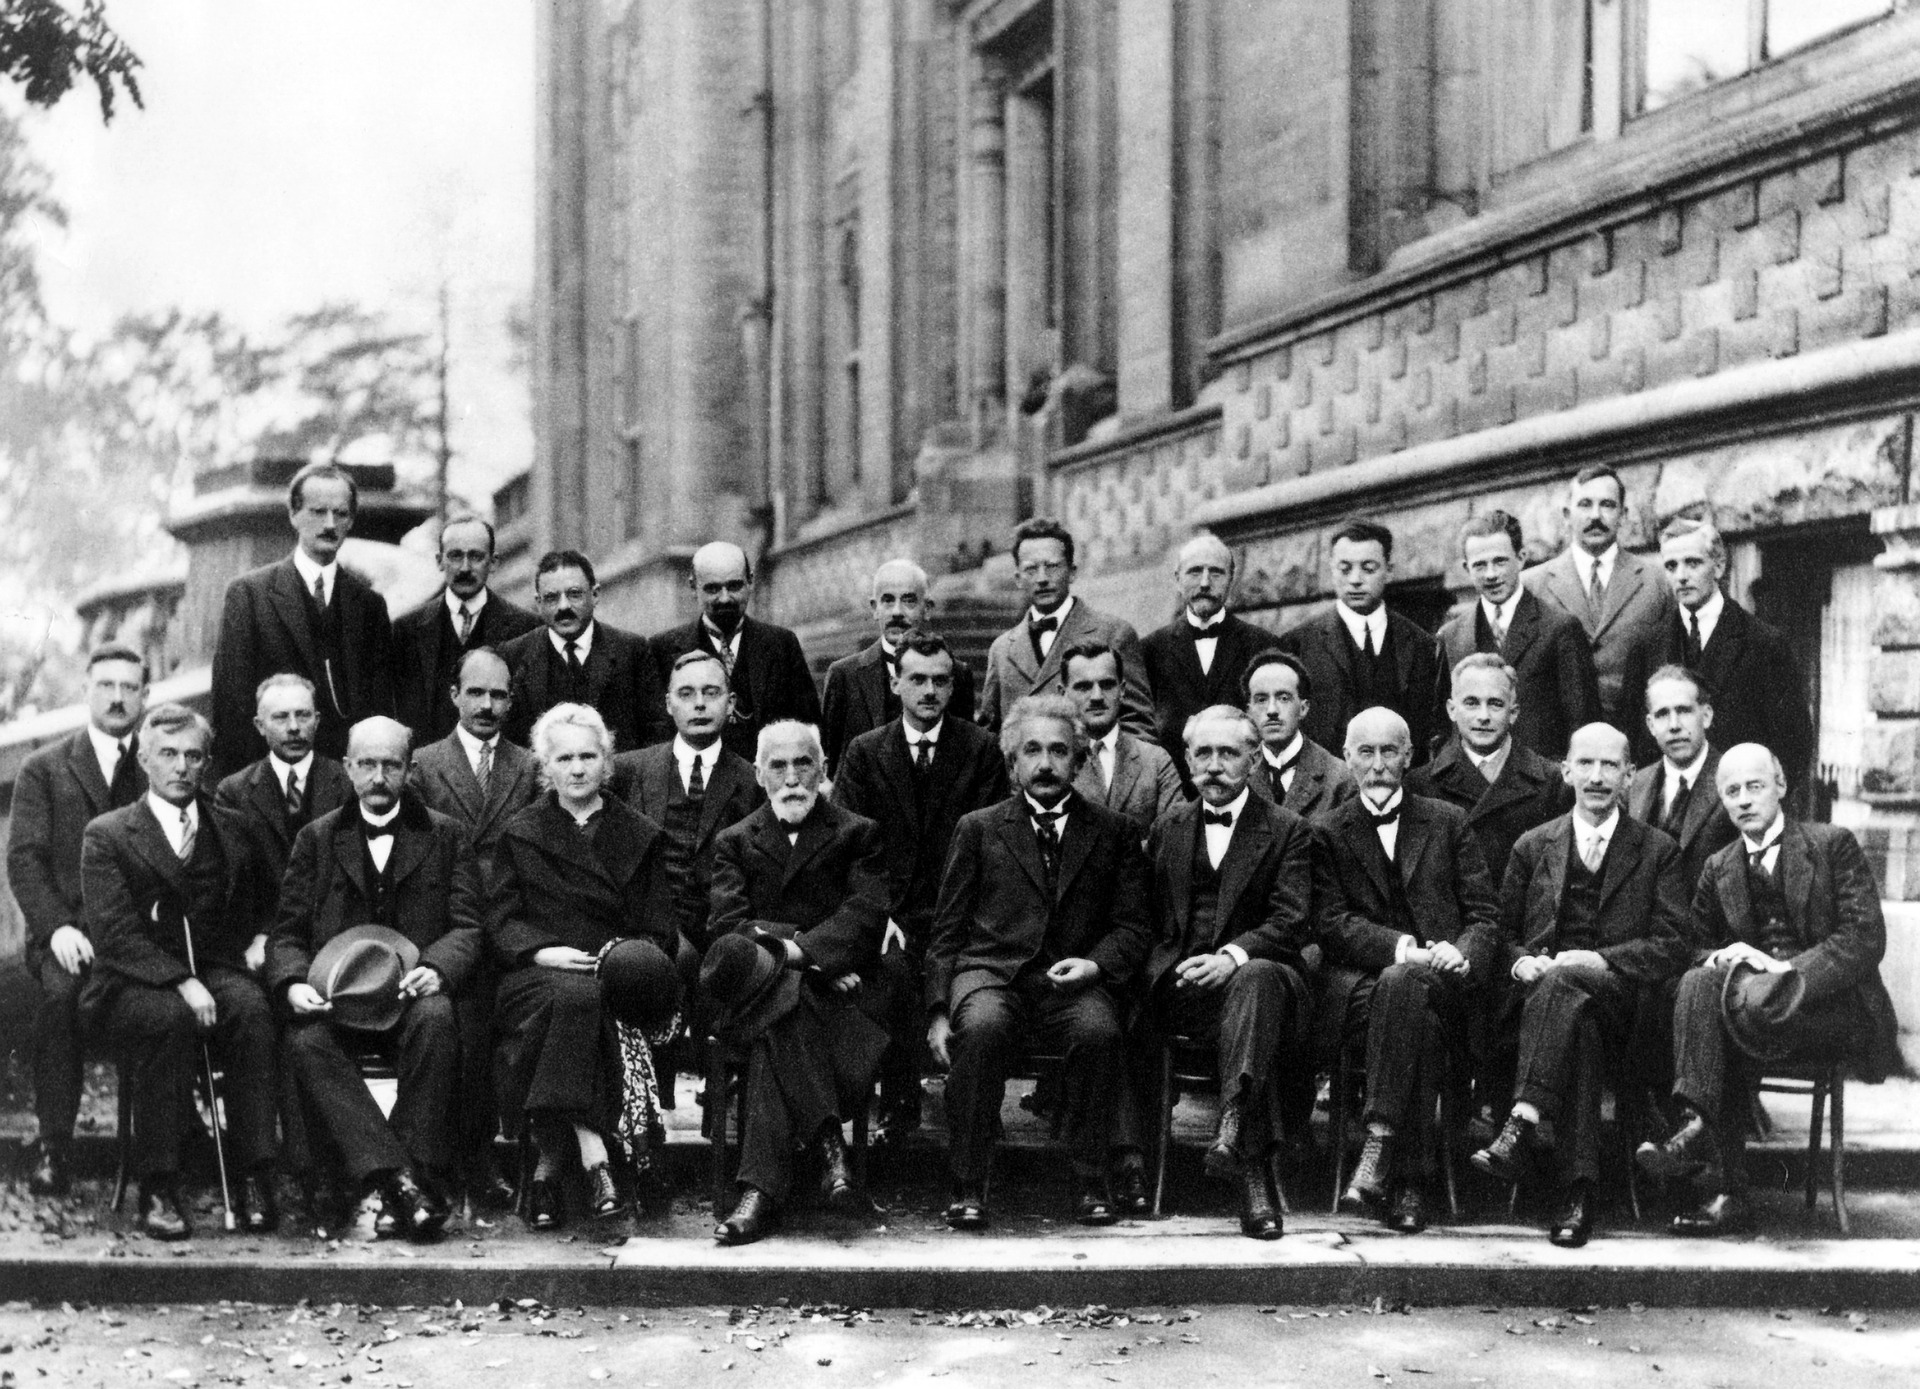 Les maths, ça permet de comprendre le monde. Cinquième Congrès Solvay de physique en 1927. WikiImages